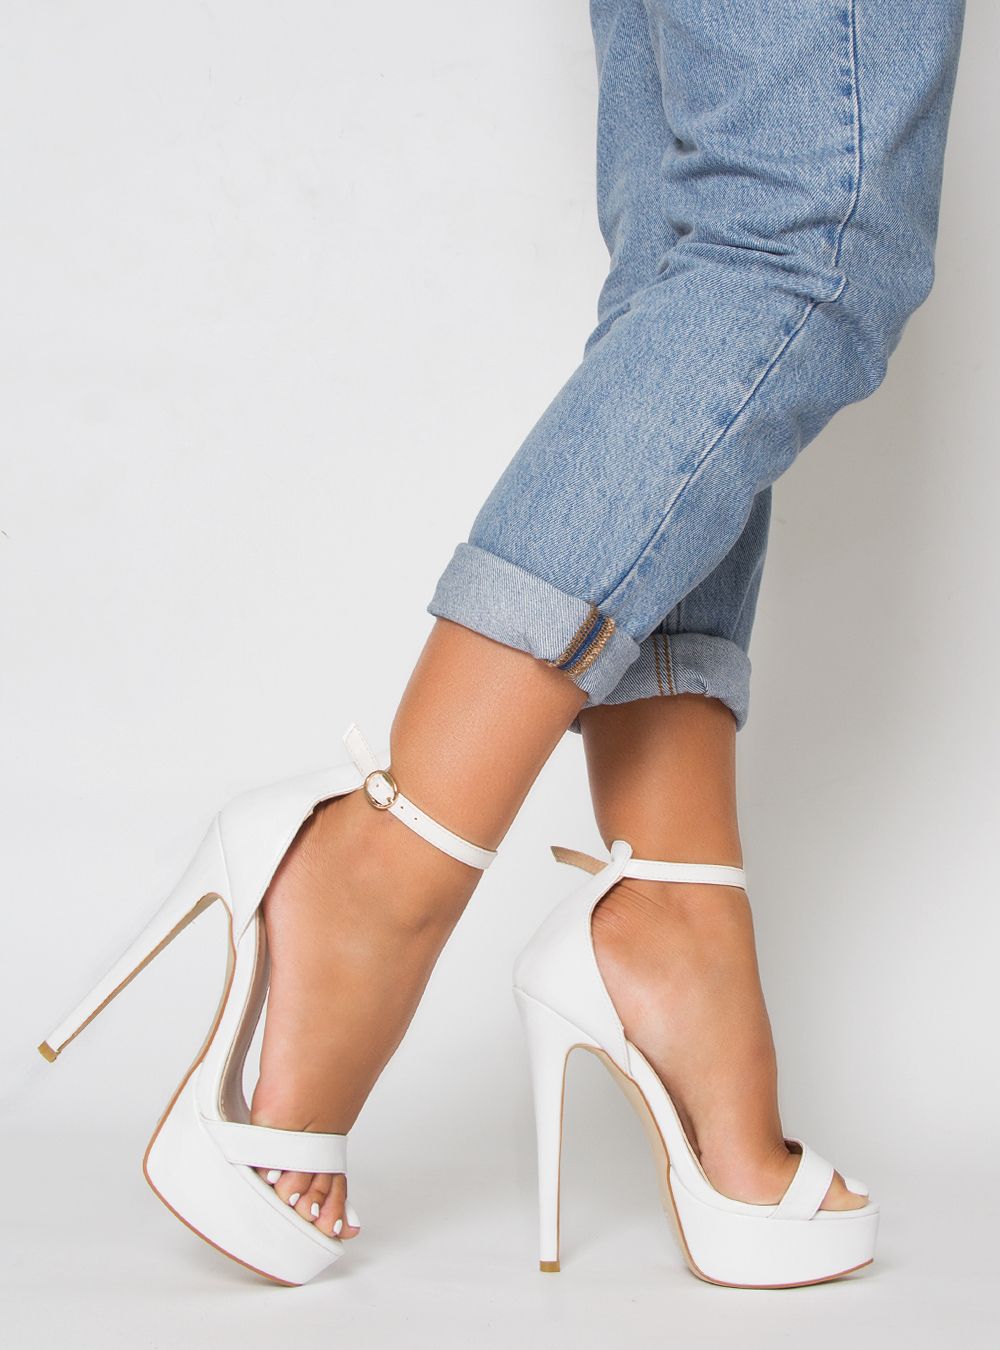 white stiletto sandals